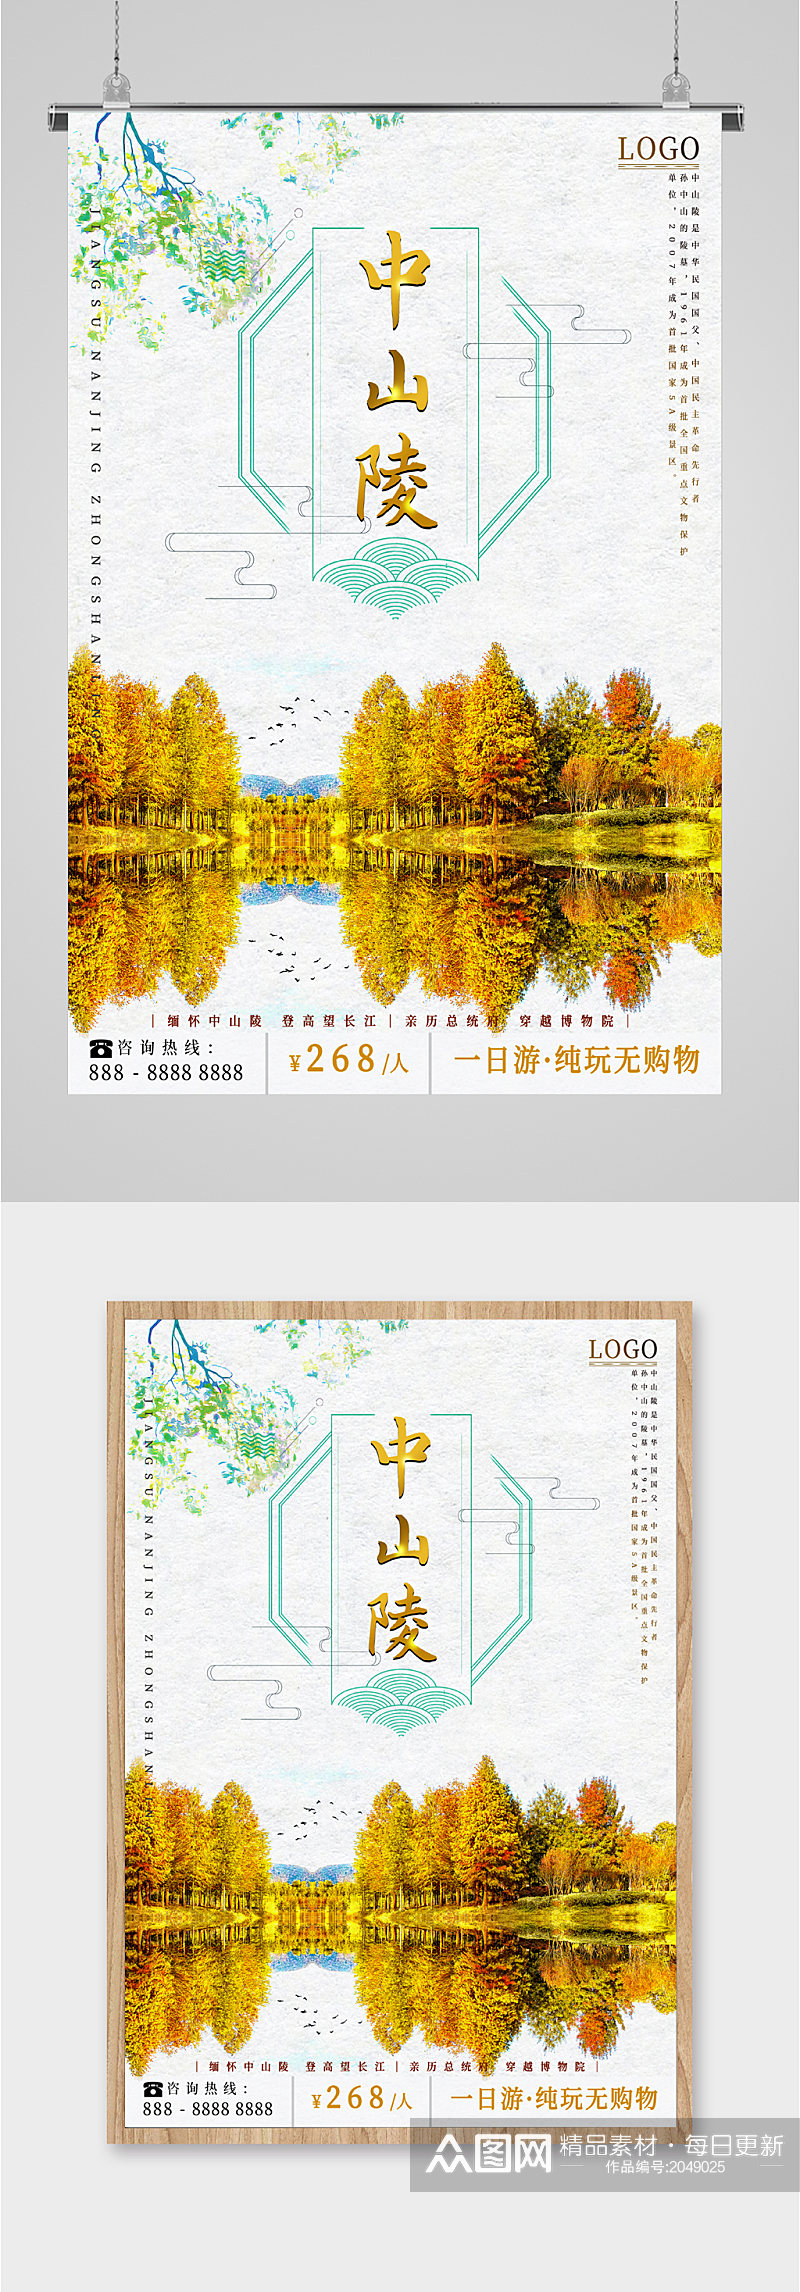 中山陵旅游宣传海报素材